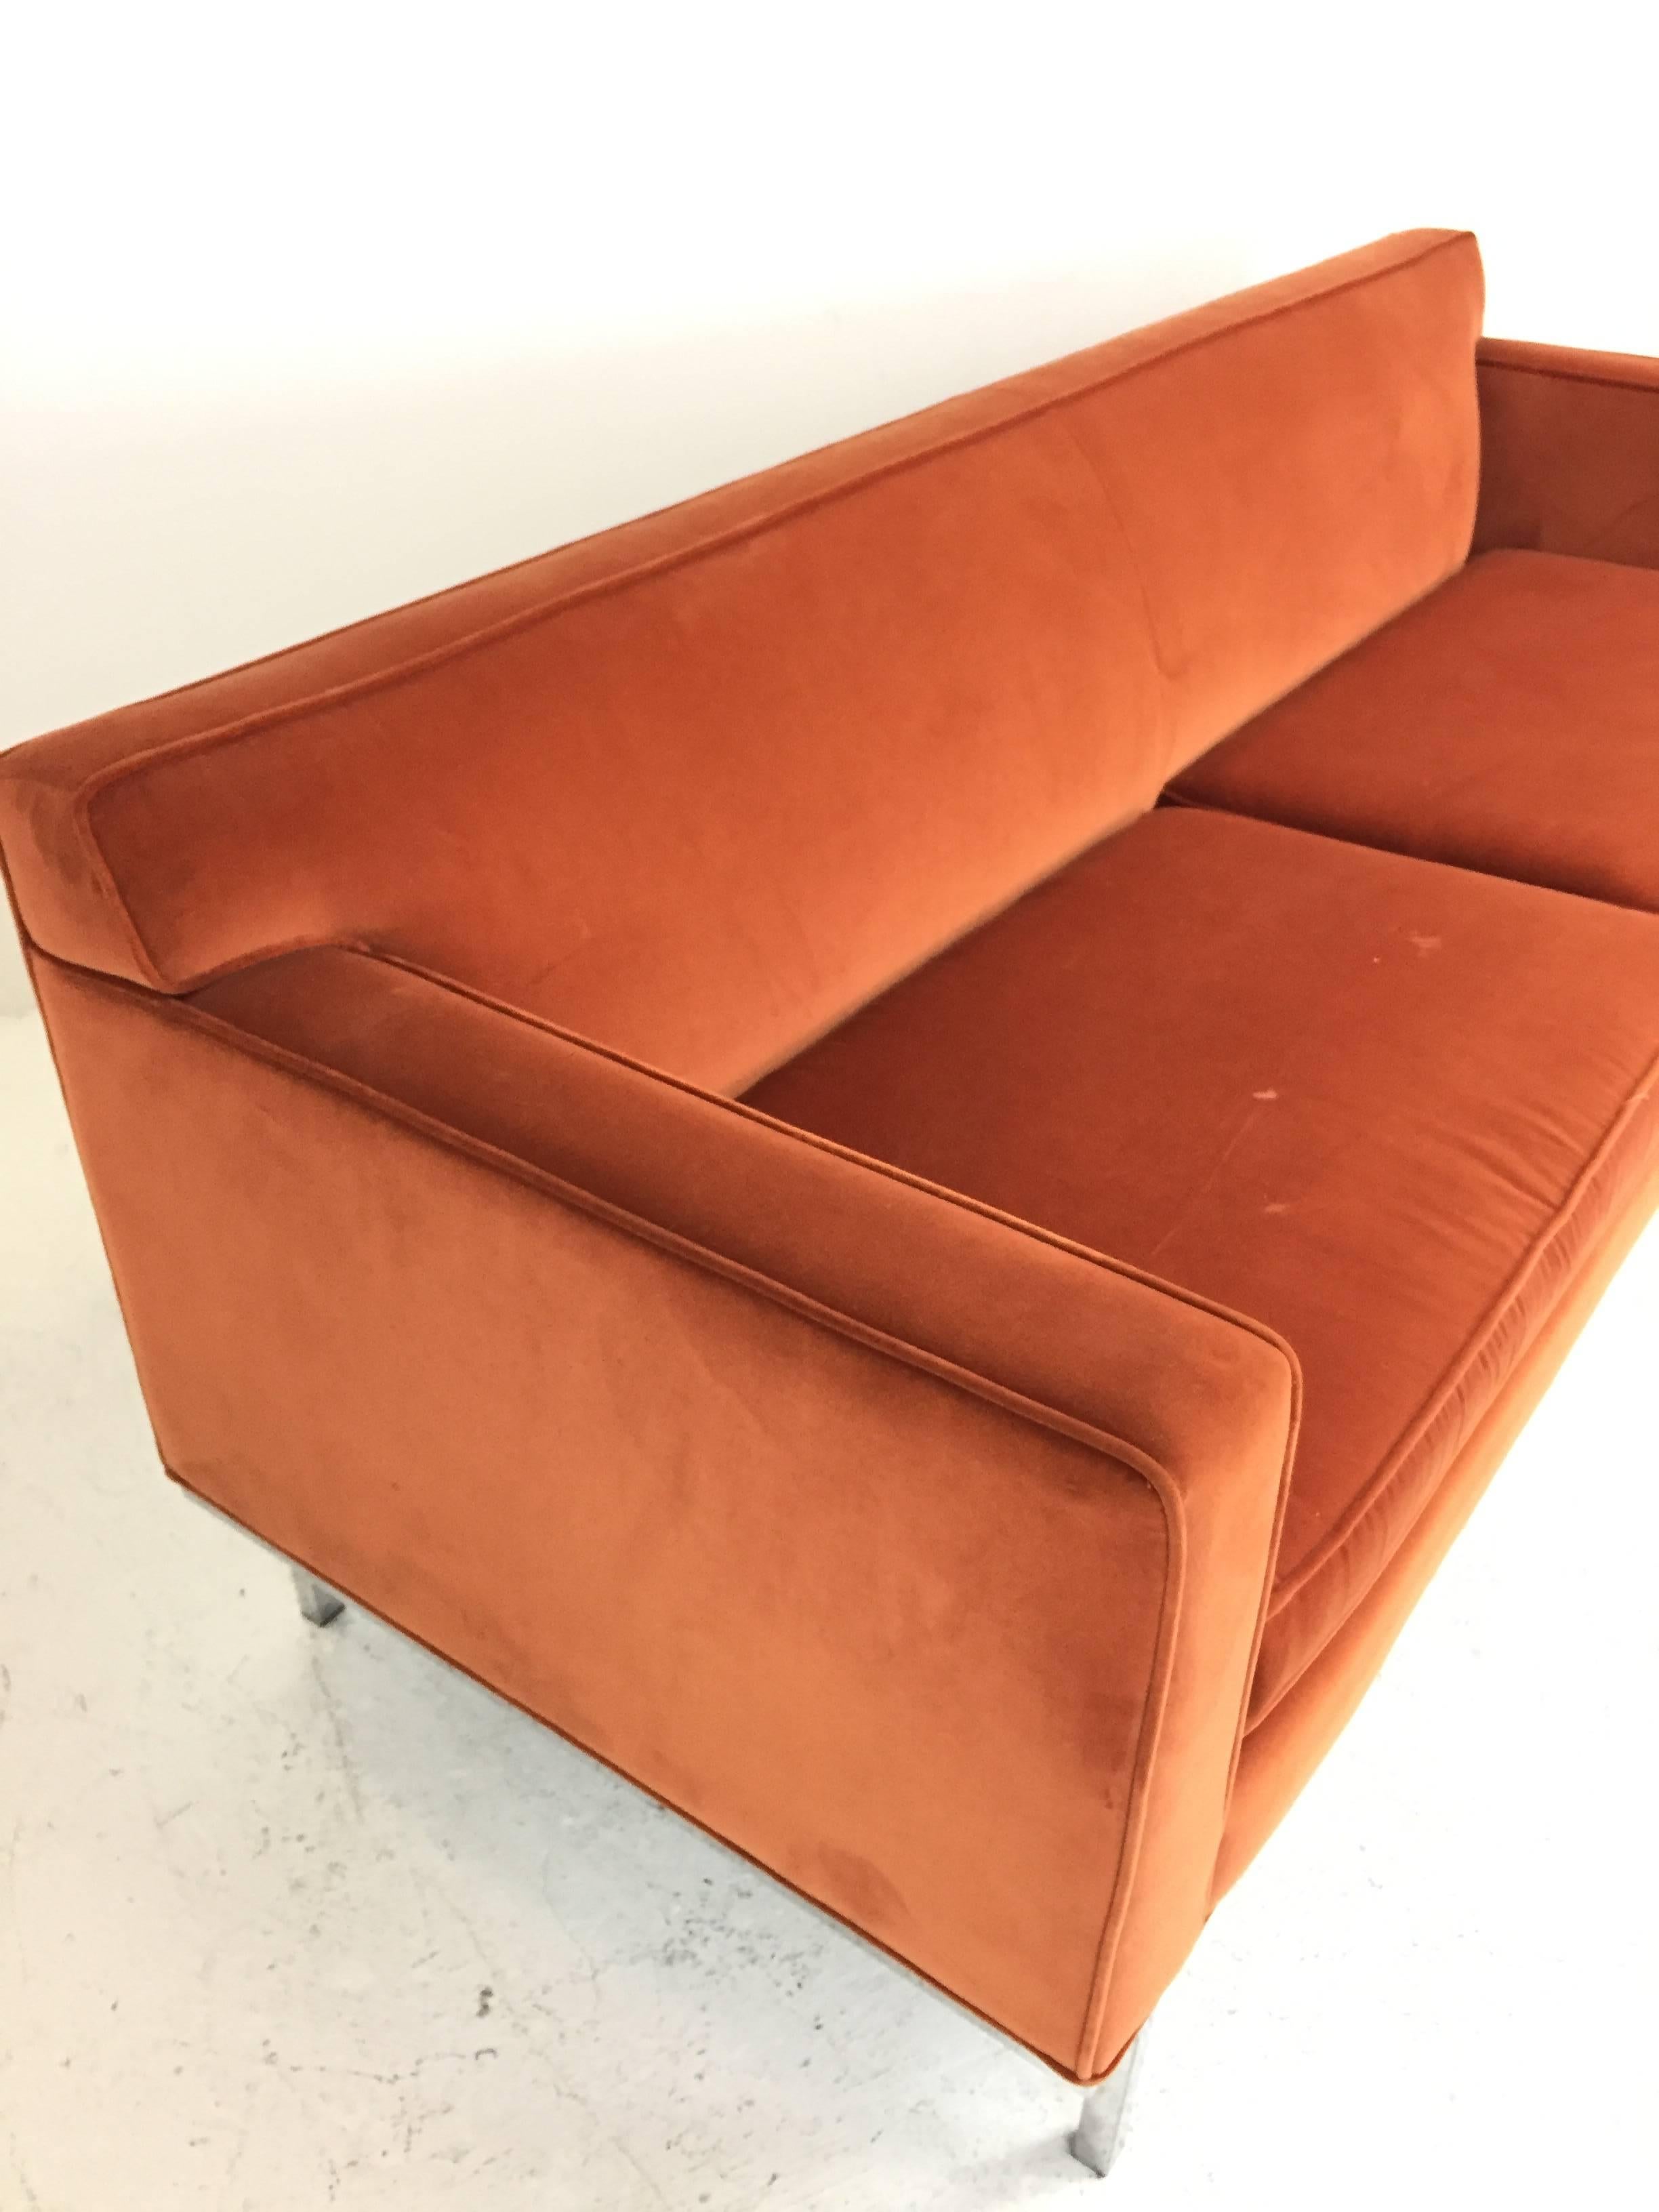 velvet orange sofa